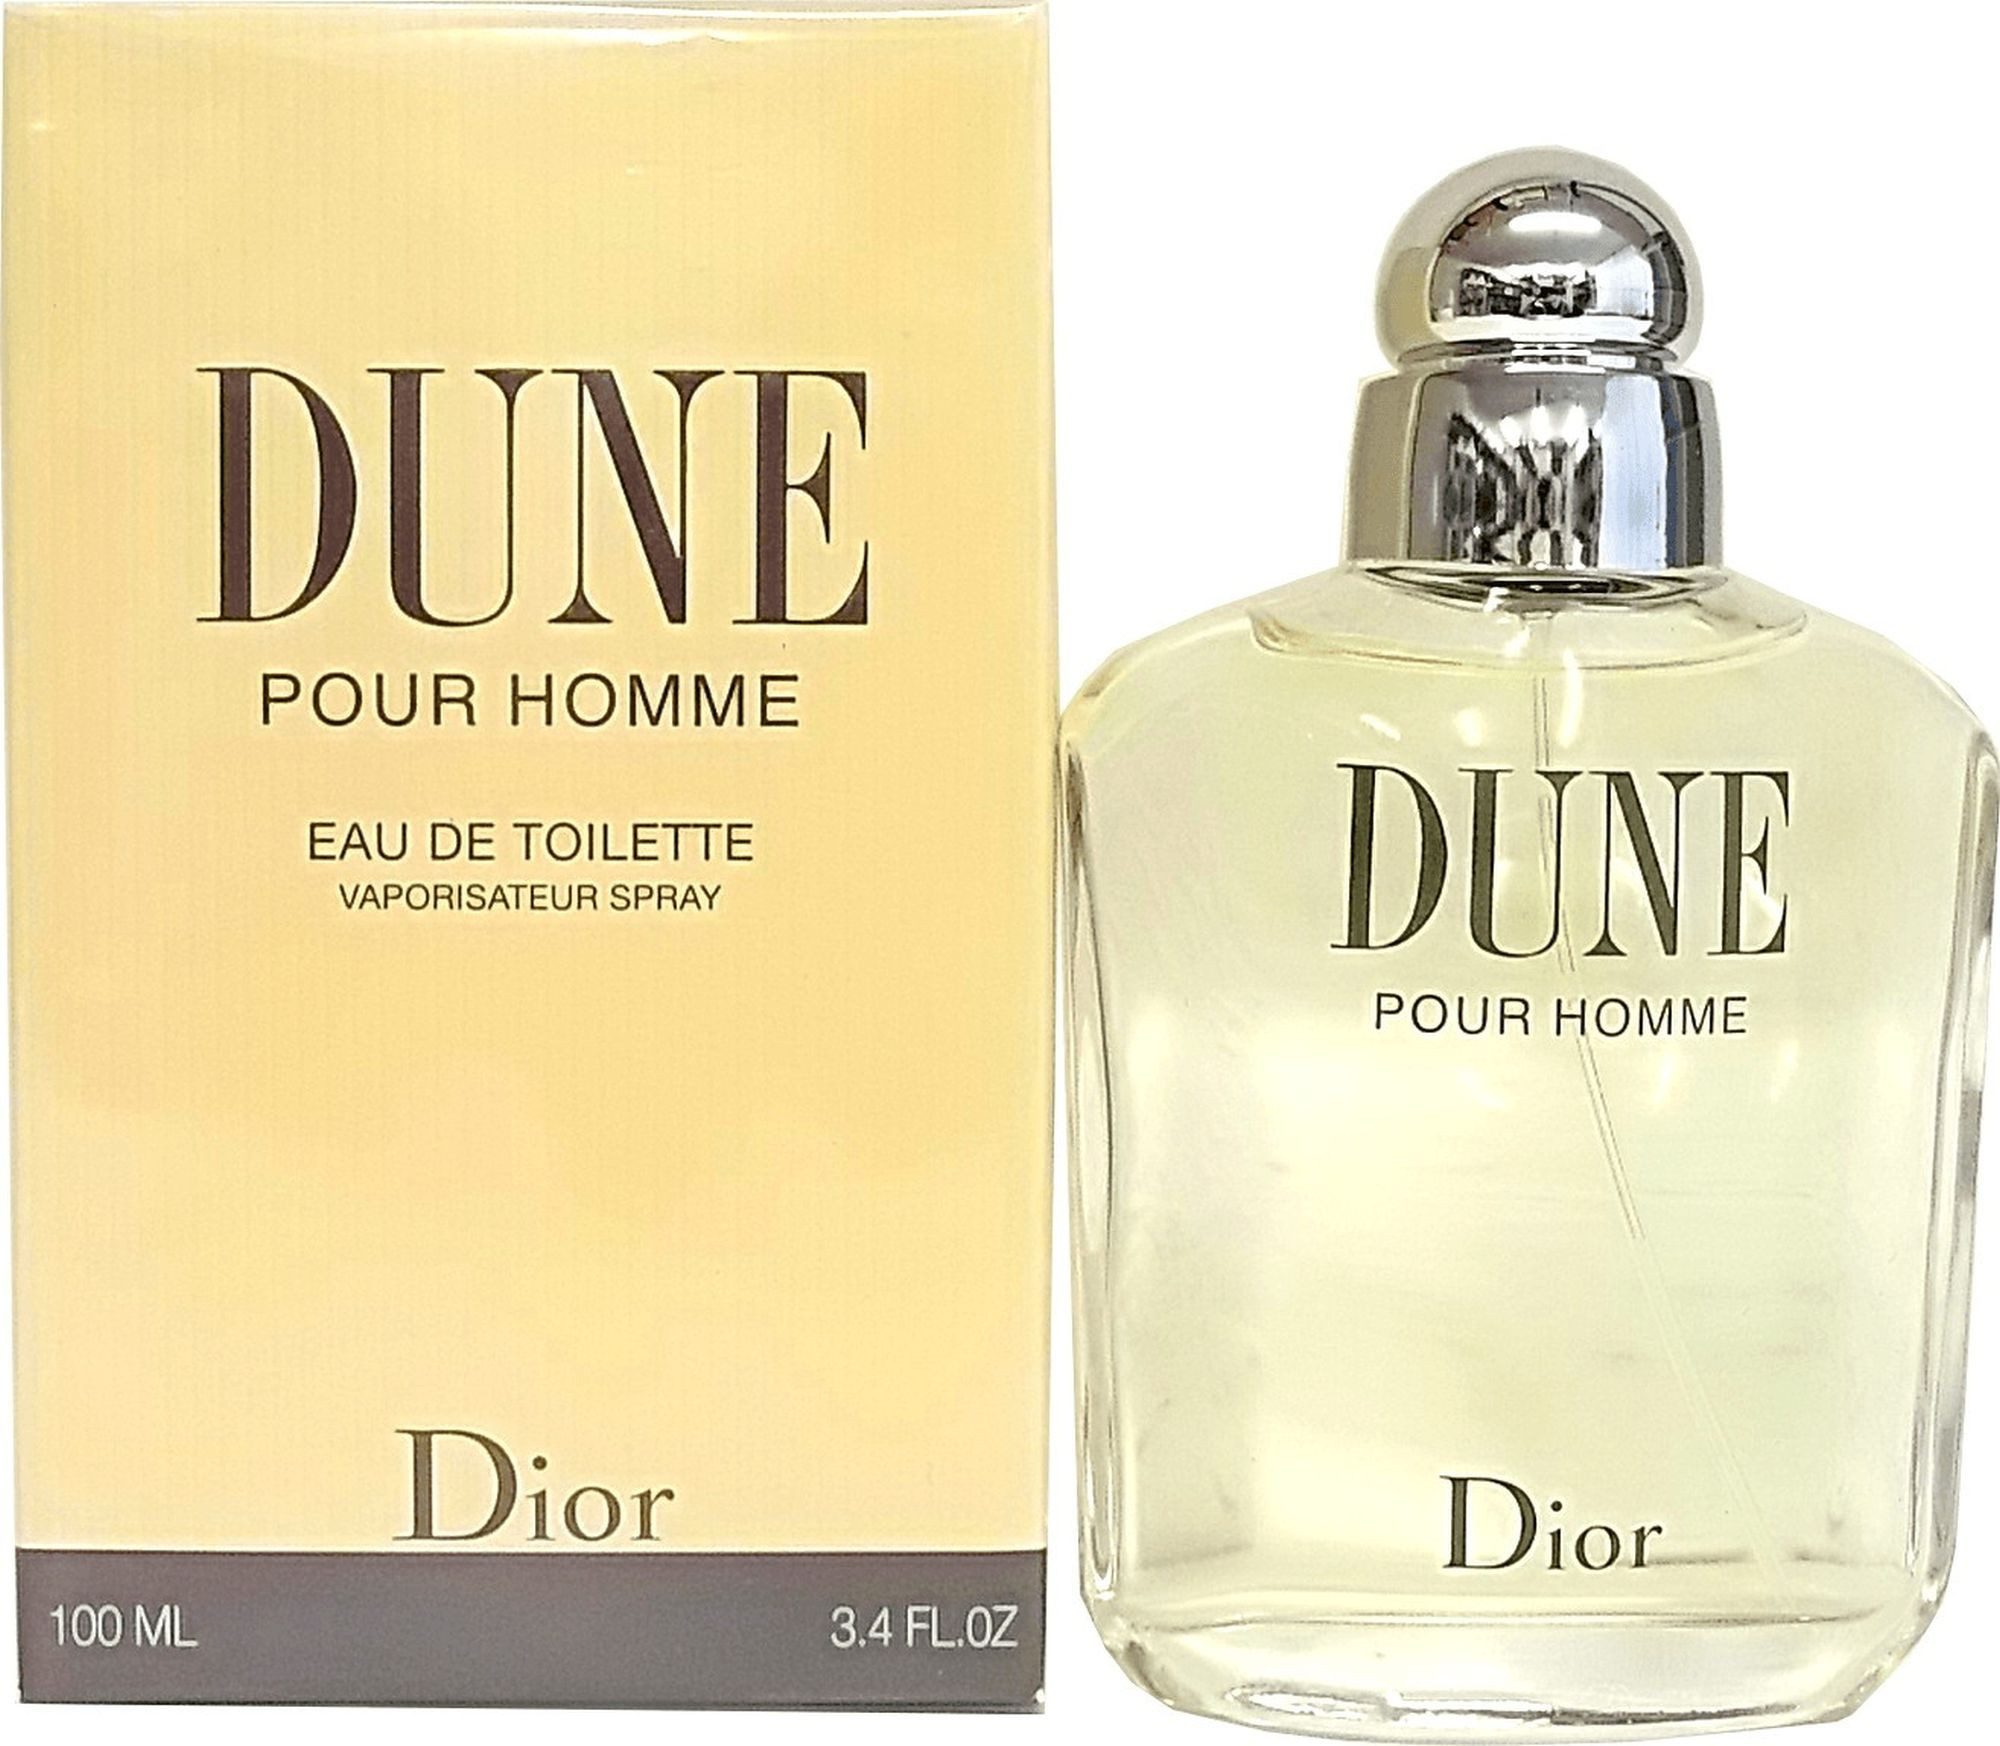 Dior Eau de Toilette Dune Pour Homme Herrenduft